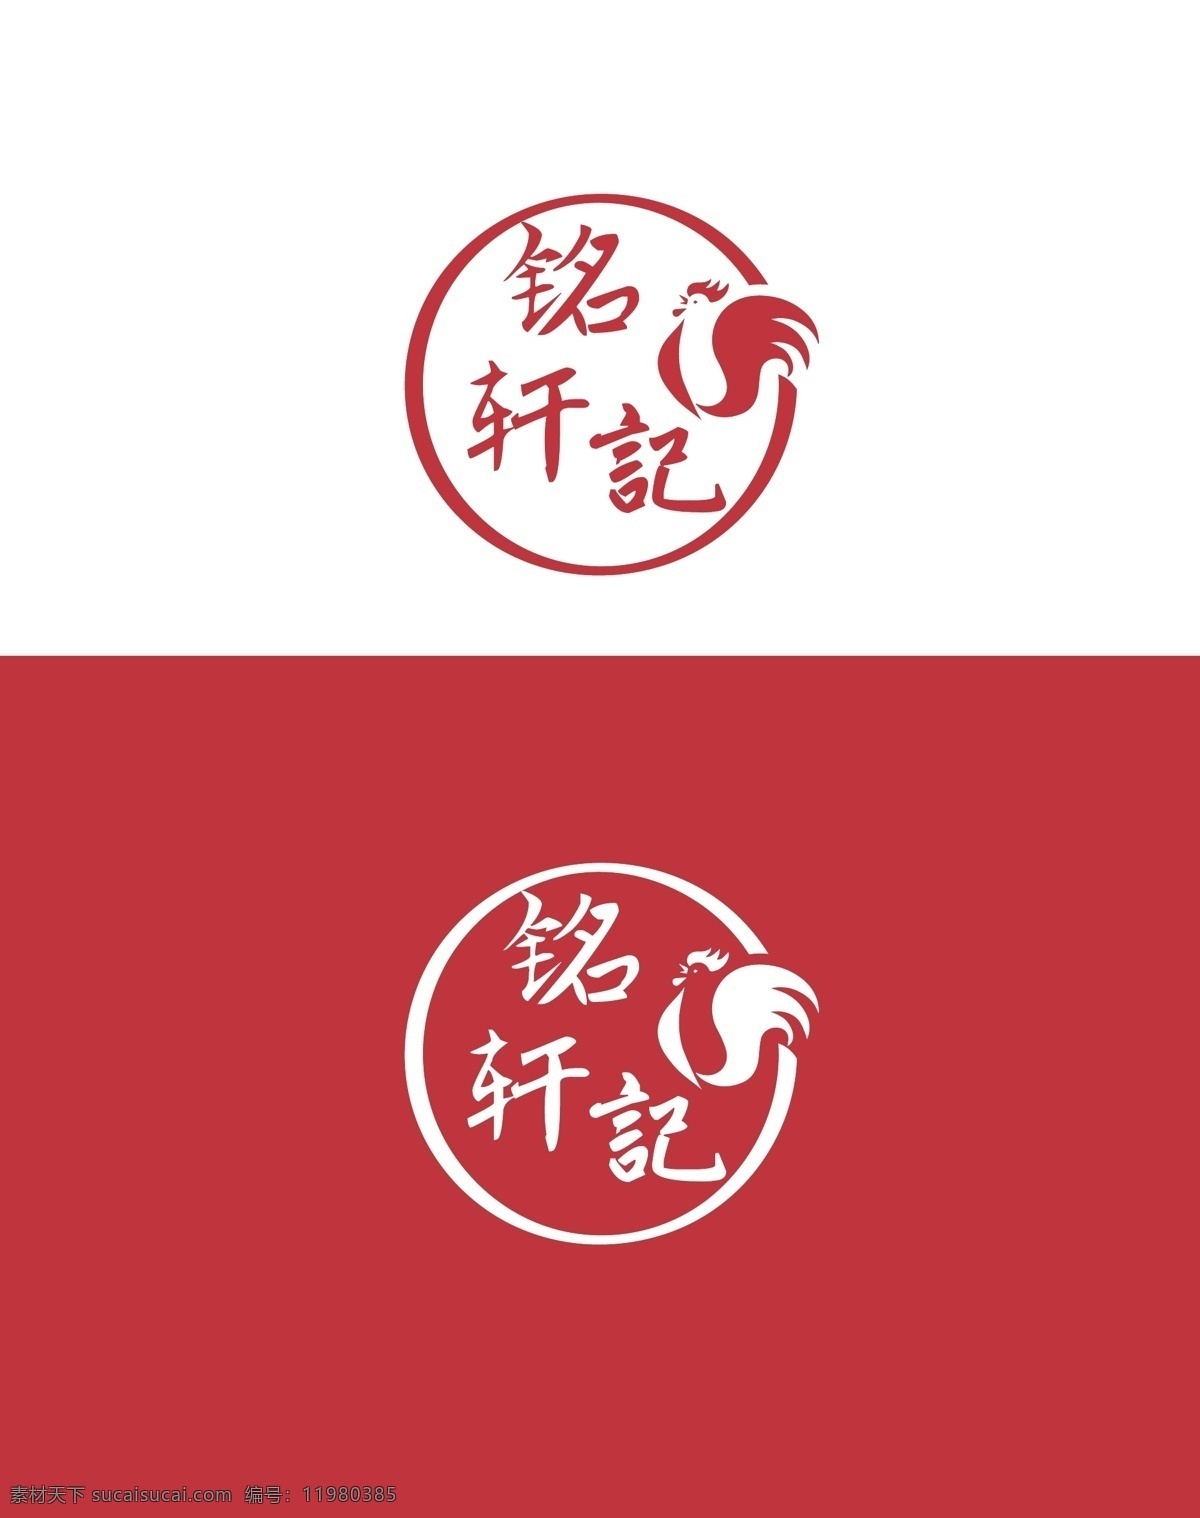 食品行业 标识设计 食品 行业 标识 公鸡 美食 标志图标 其他图标